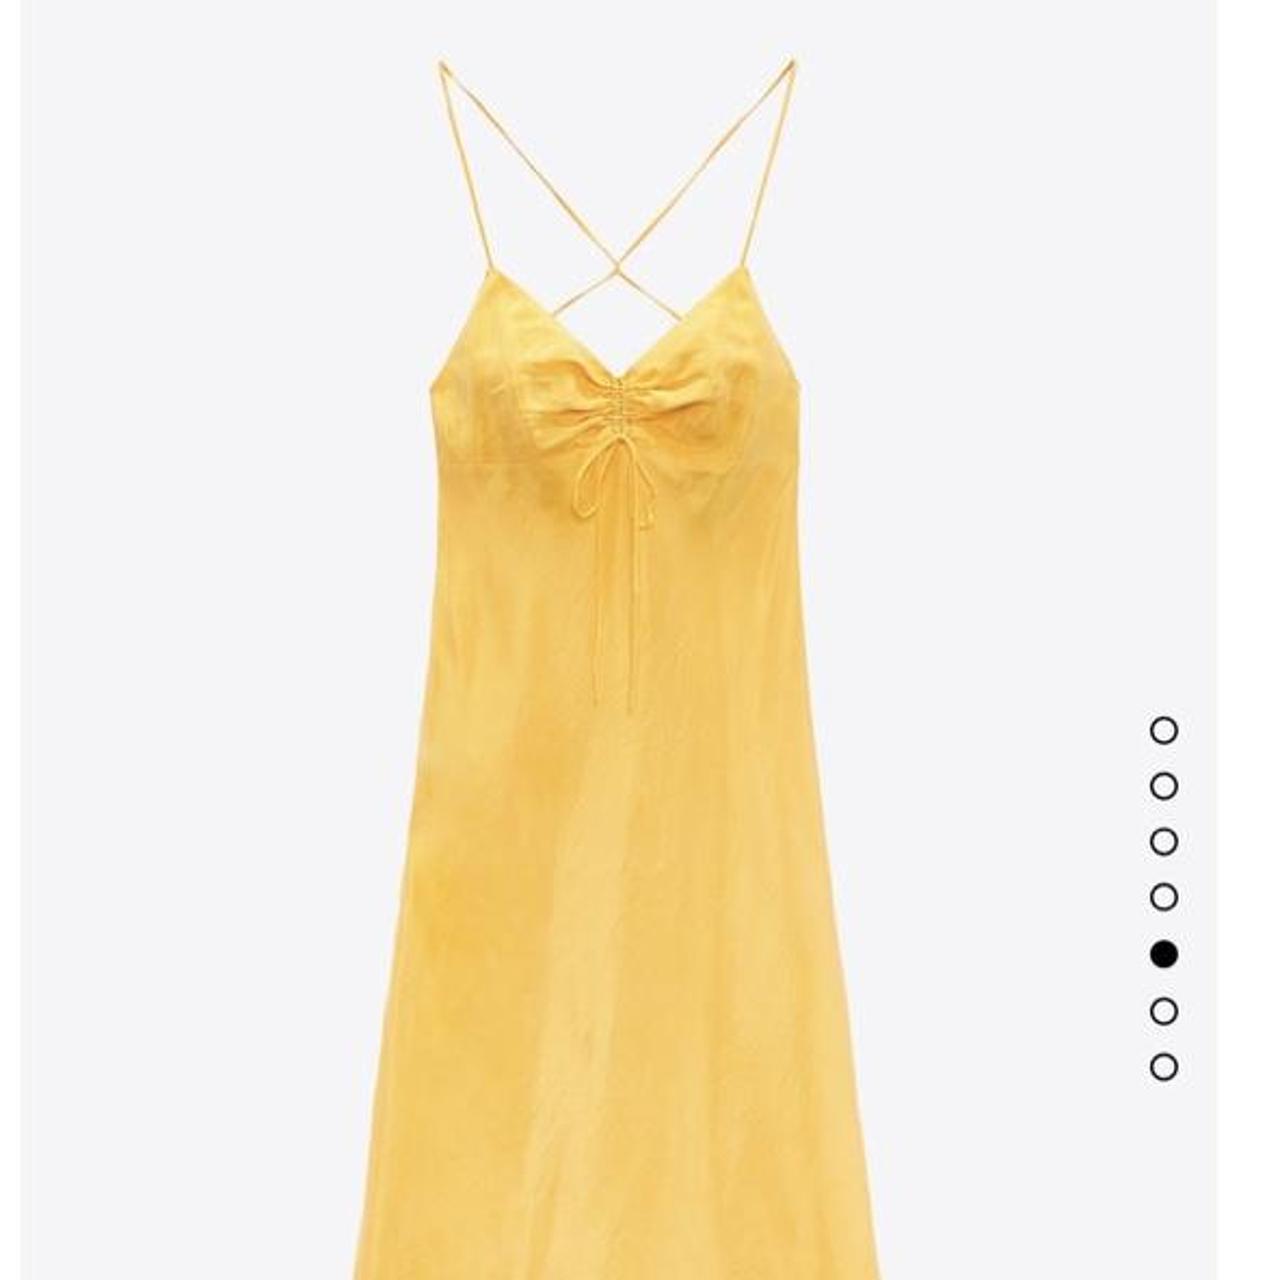 Zara Women's Yellow Dress